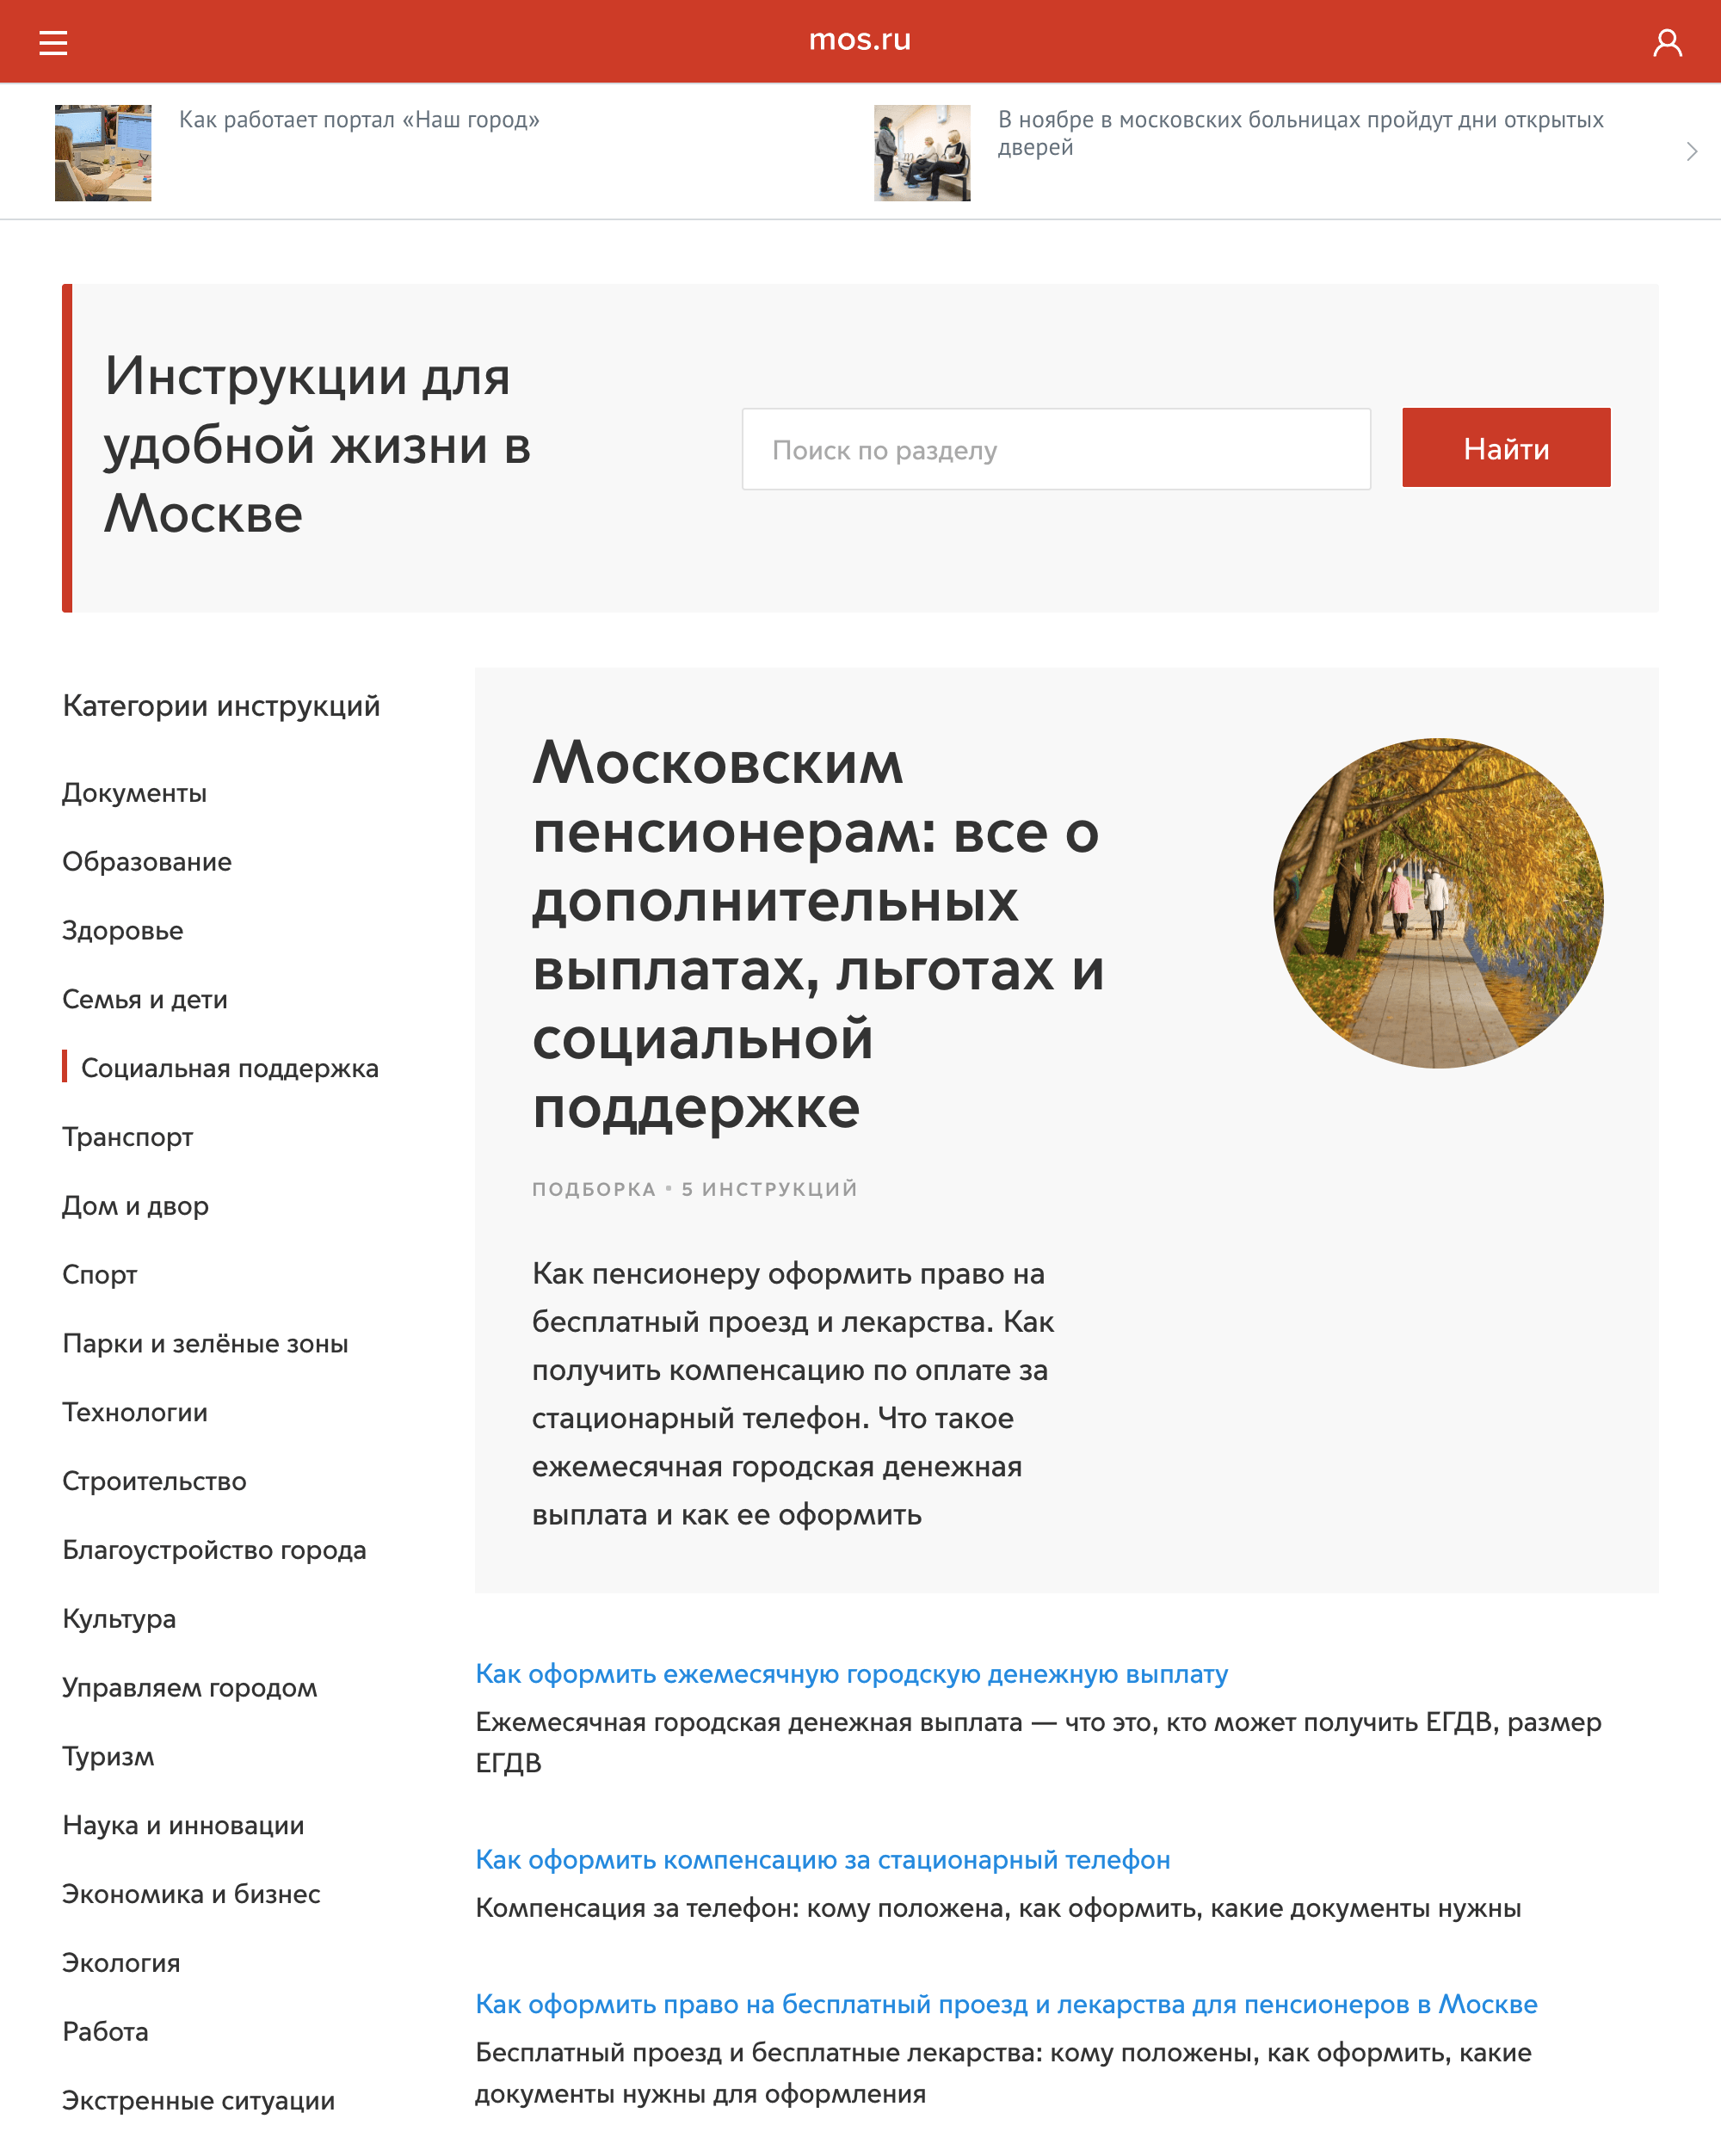 Московские пенсионеры могут найти информацию на сайте мэра